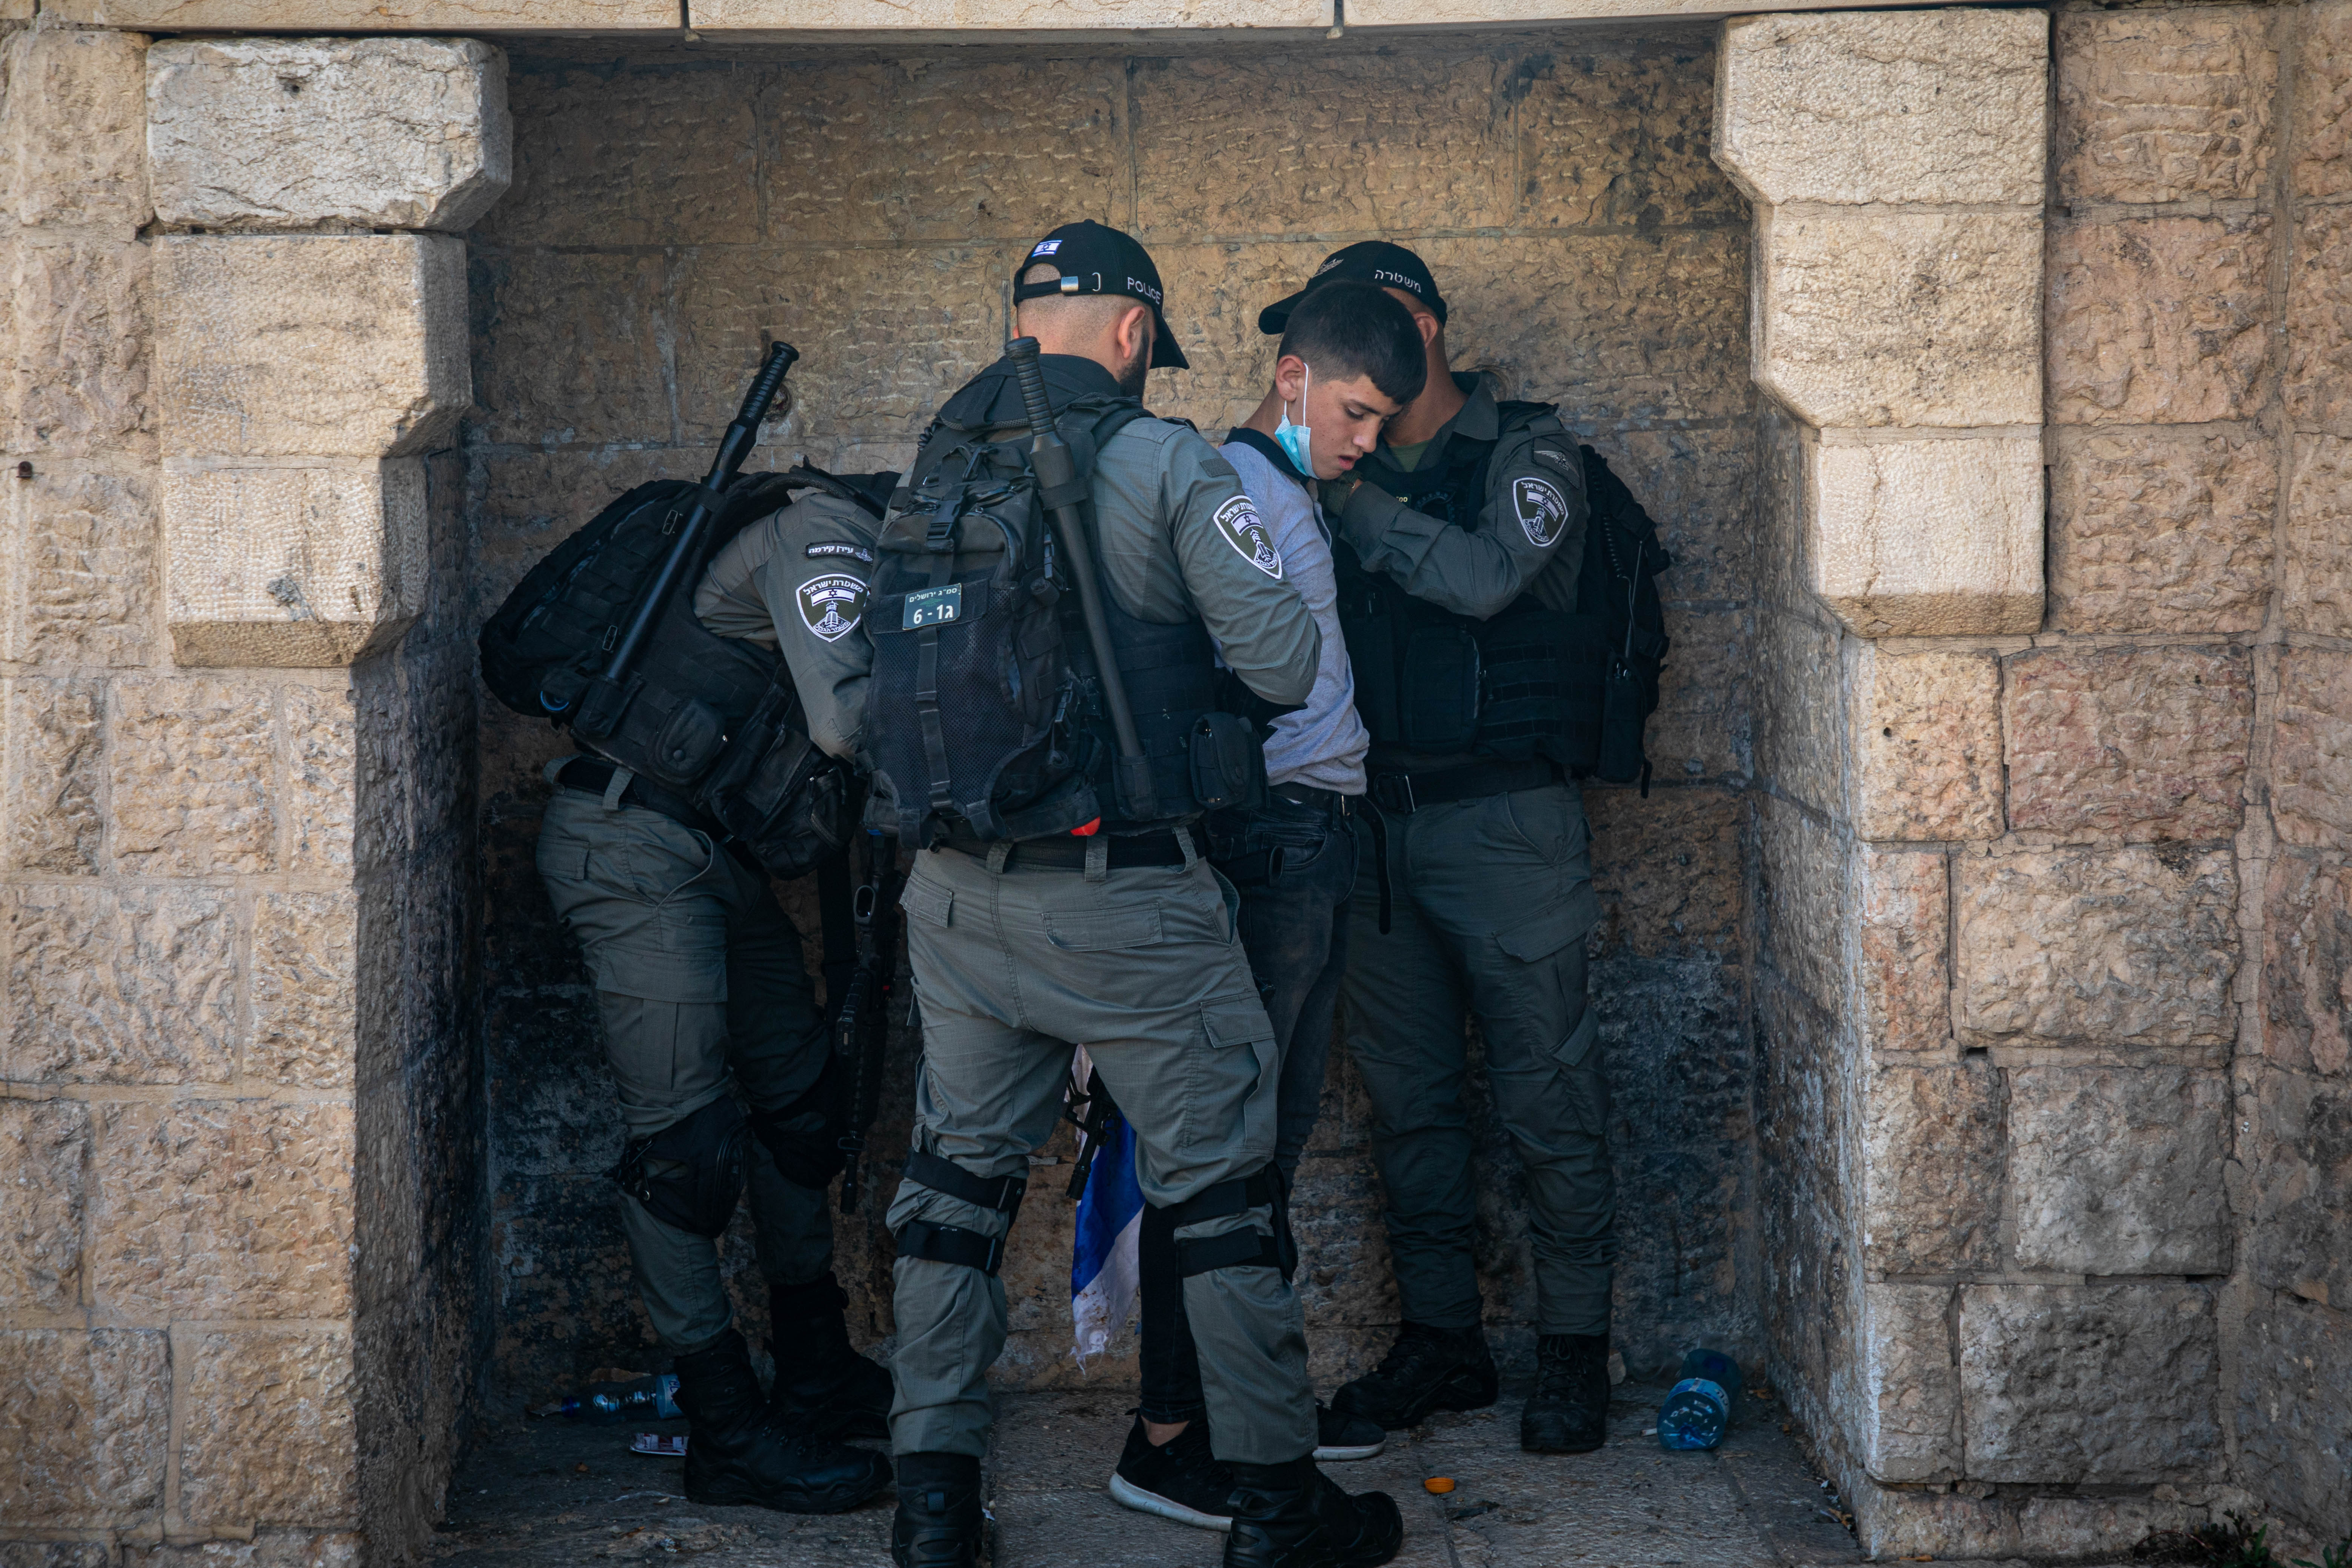 İsrail polisi, aşırı sağcı milletvekiline tepki gösteren Filistinlilere saldırdı